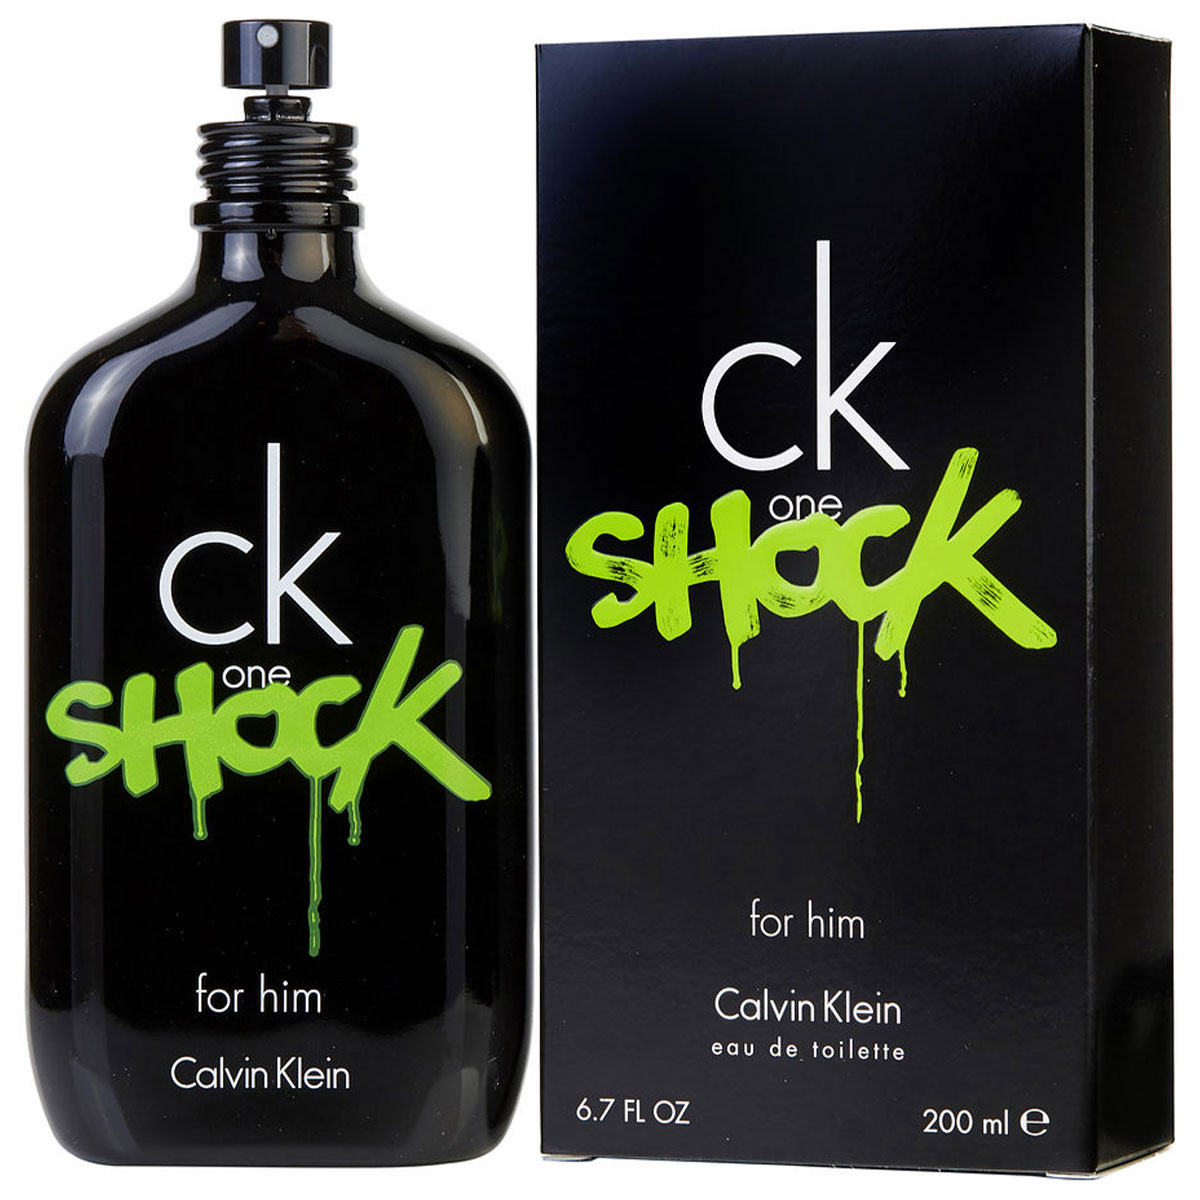 CK Shock chai 200ml của thương hiệu Calvin Klein